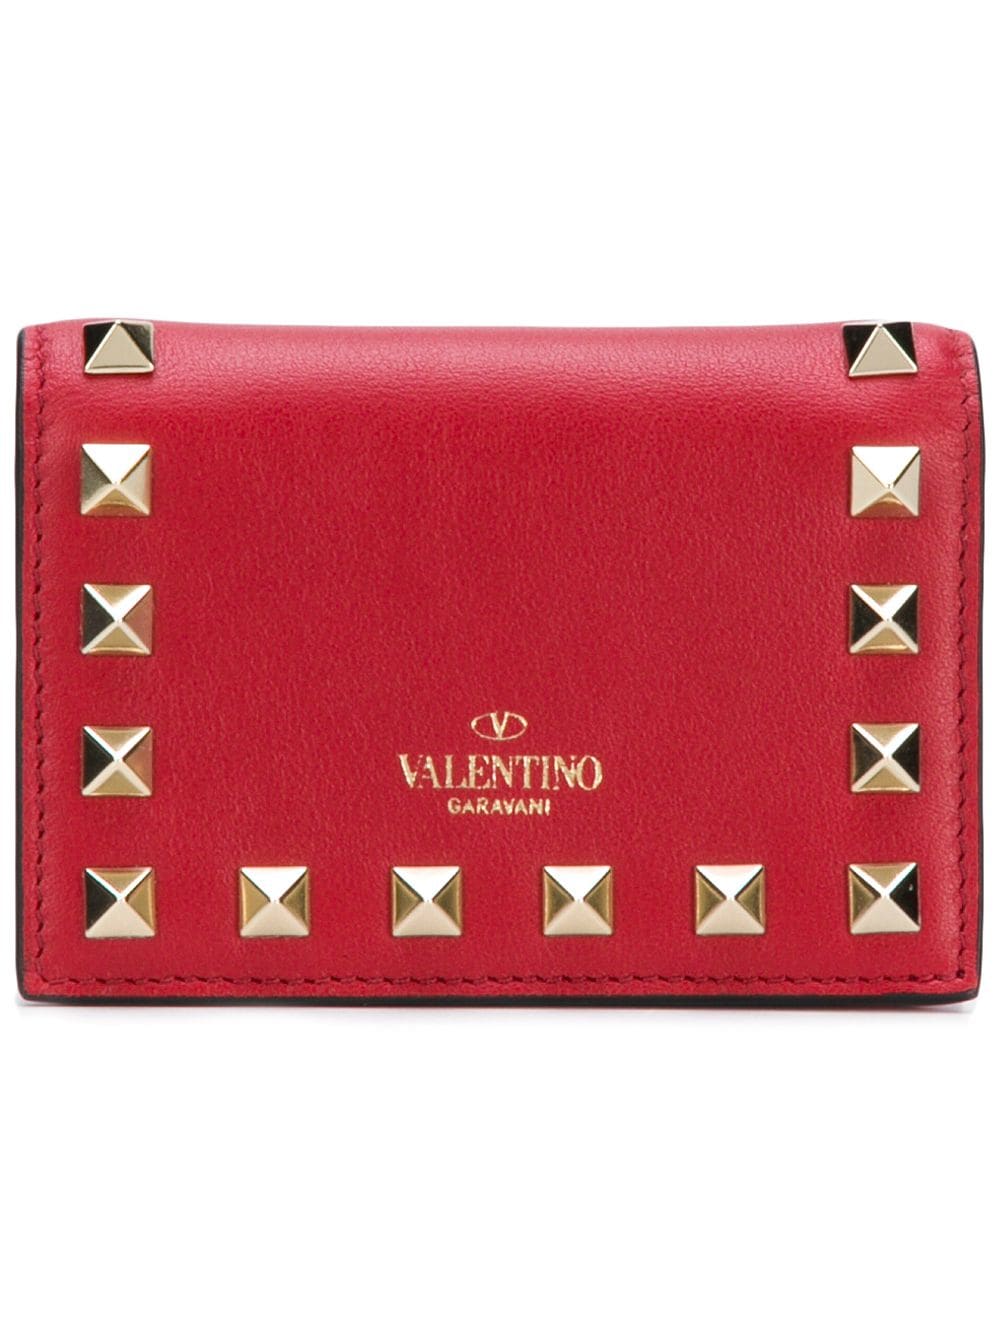 фото Valentino кошелек Valentino Garavani Compact Rockstud